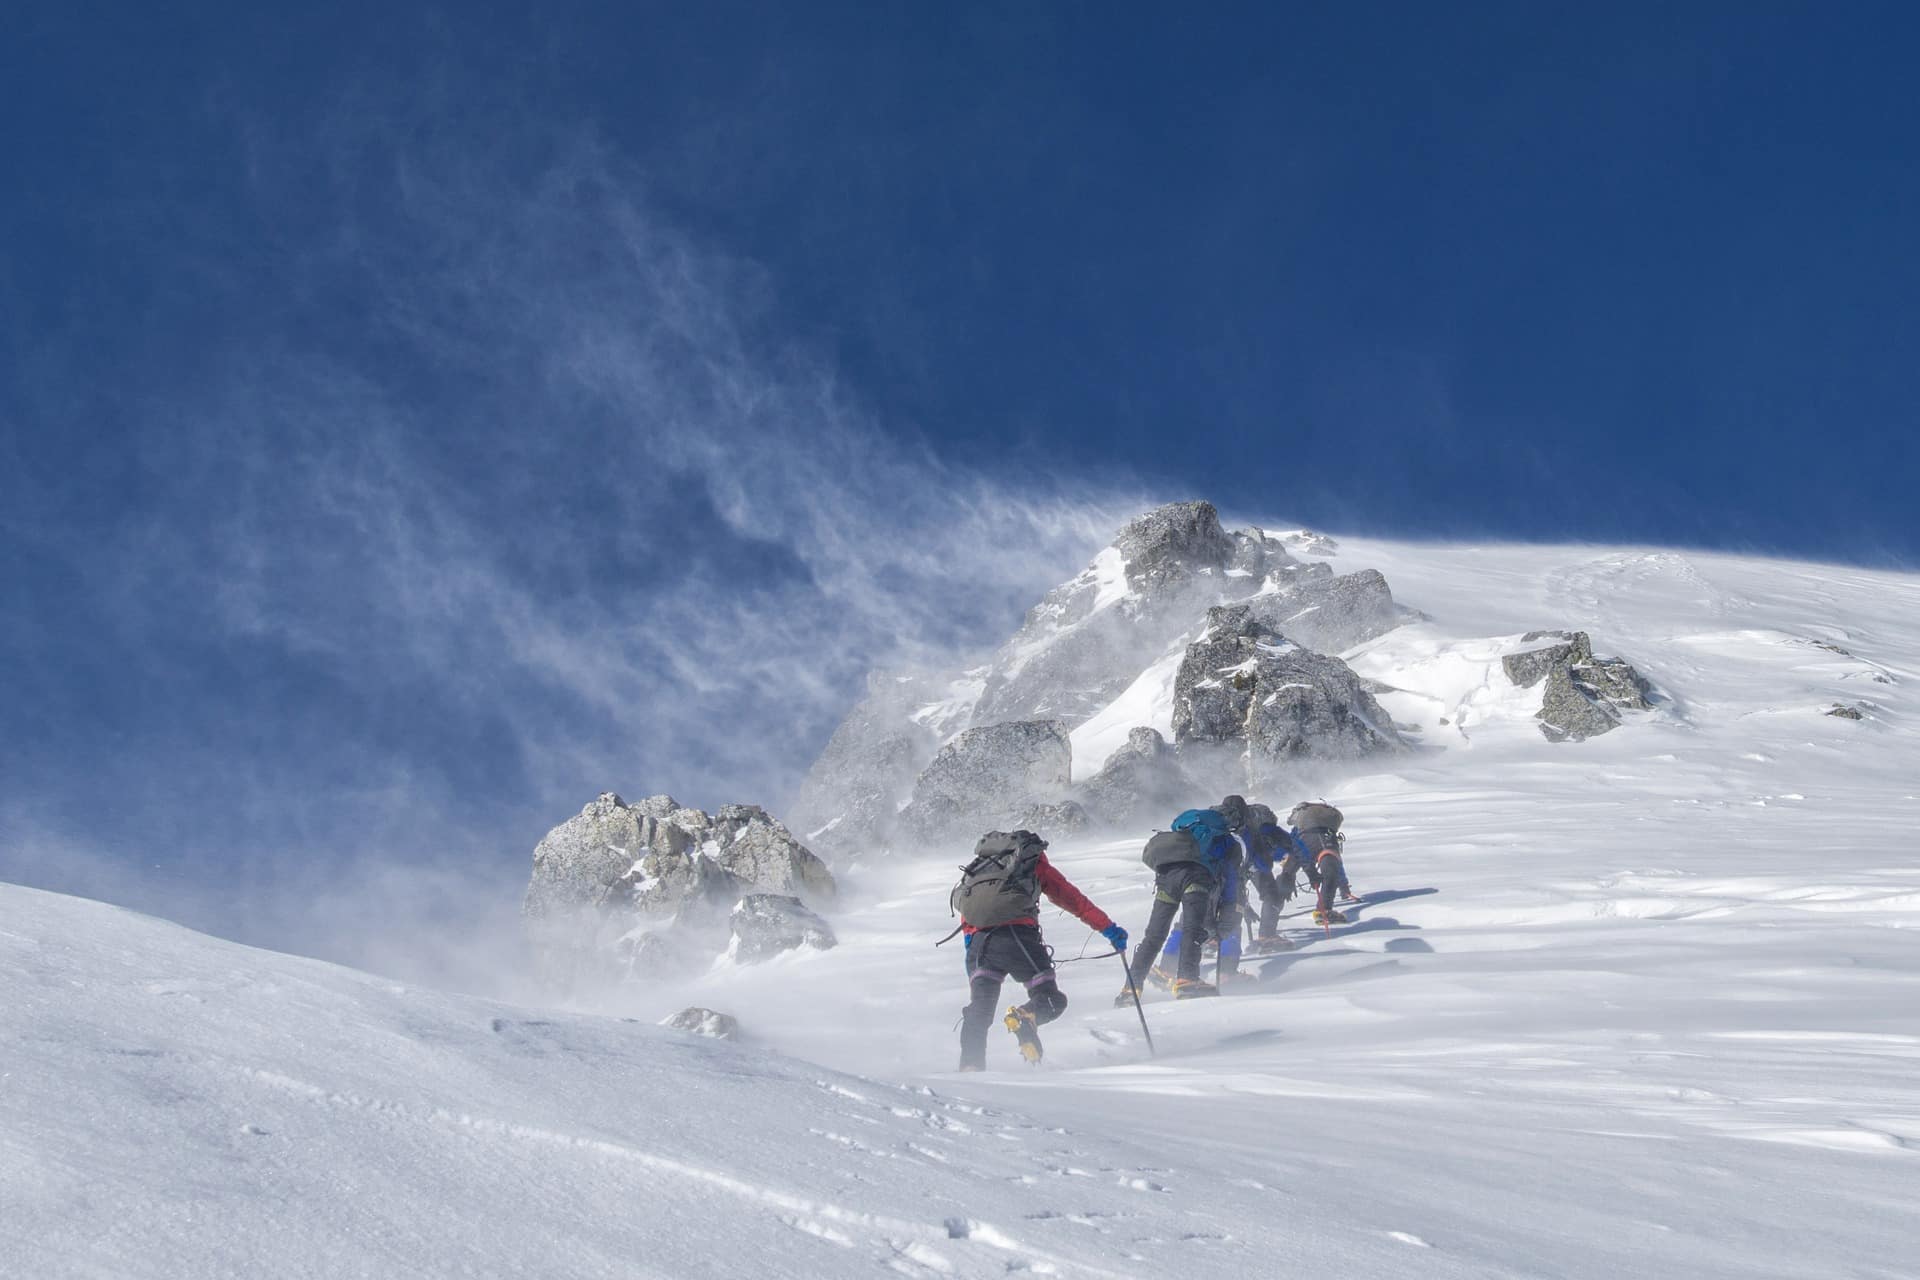 Alpinistes sous le vent
Crédit : Pixabay